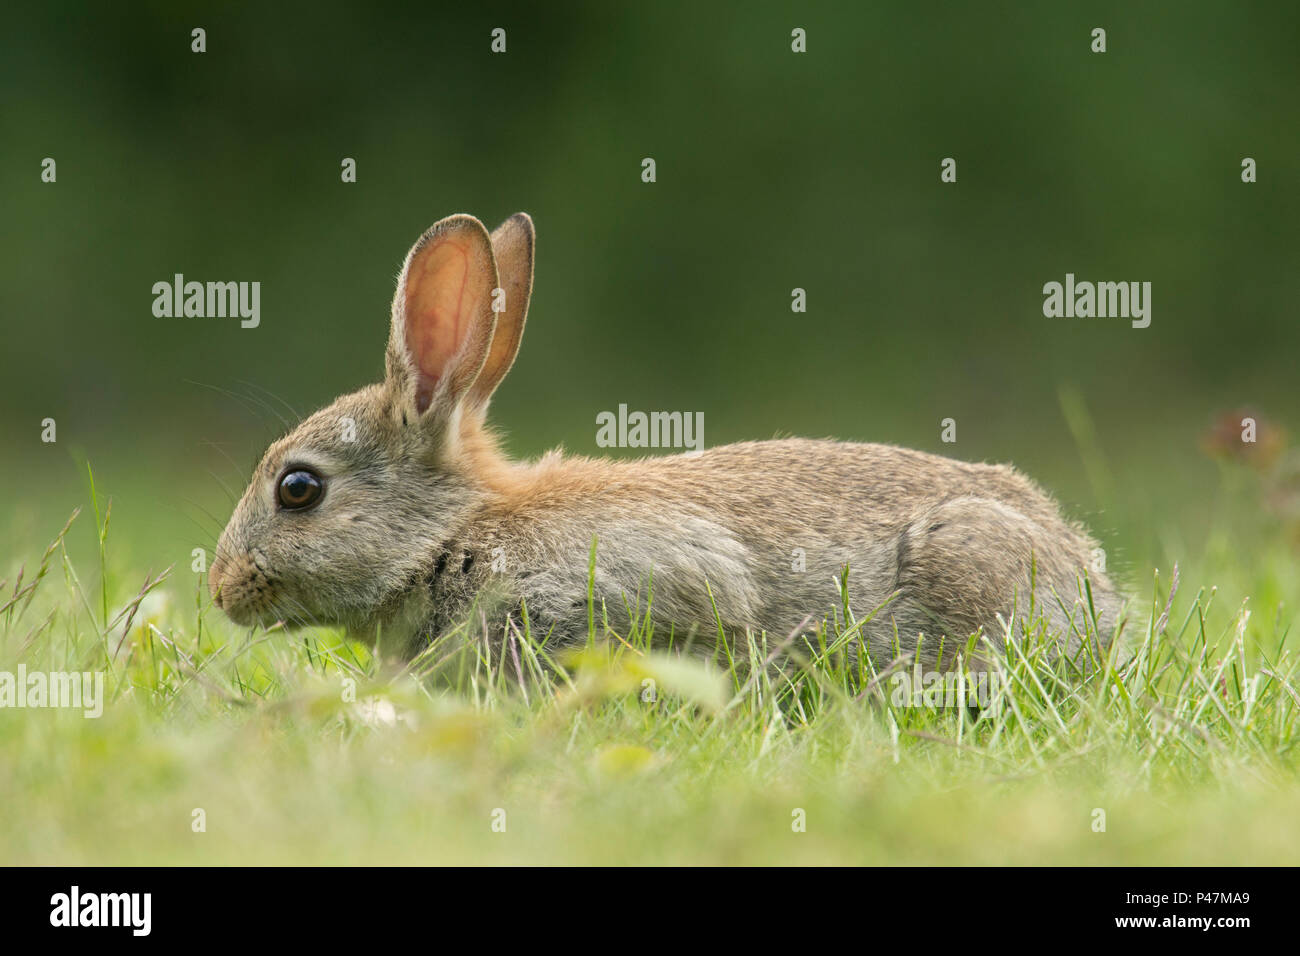 Lapin de garenne, Oryctolagus cuniculus, jeune lapin se nourrir dans l'herbe, mai, Norfolk, UK, Banque D'Images